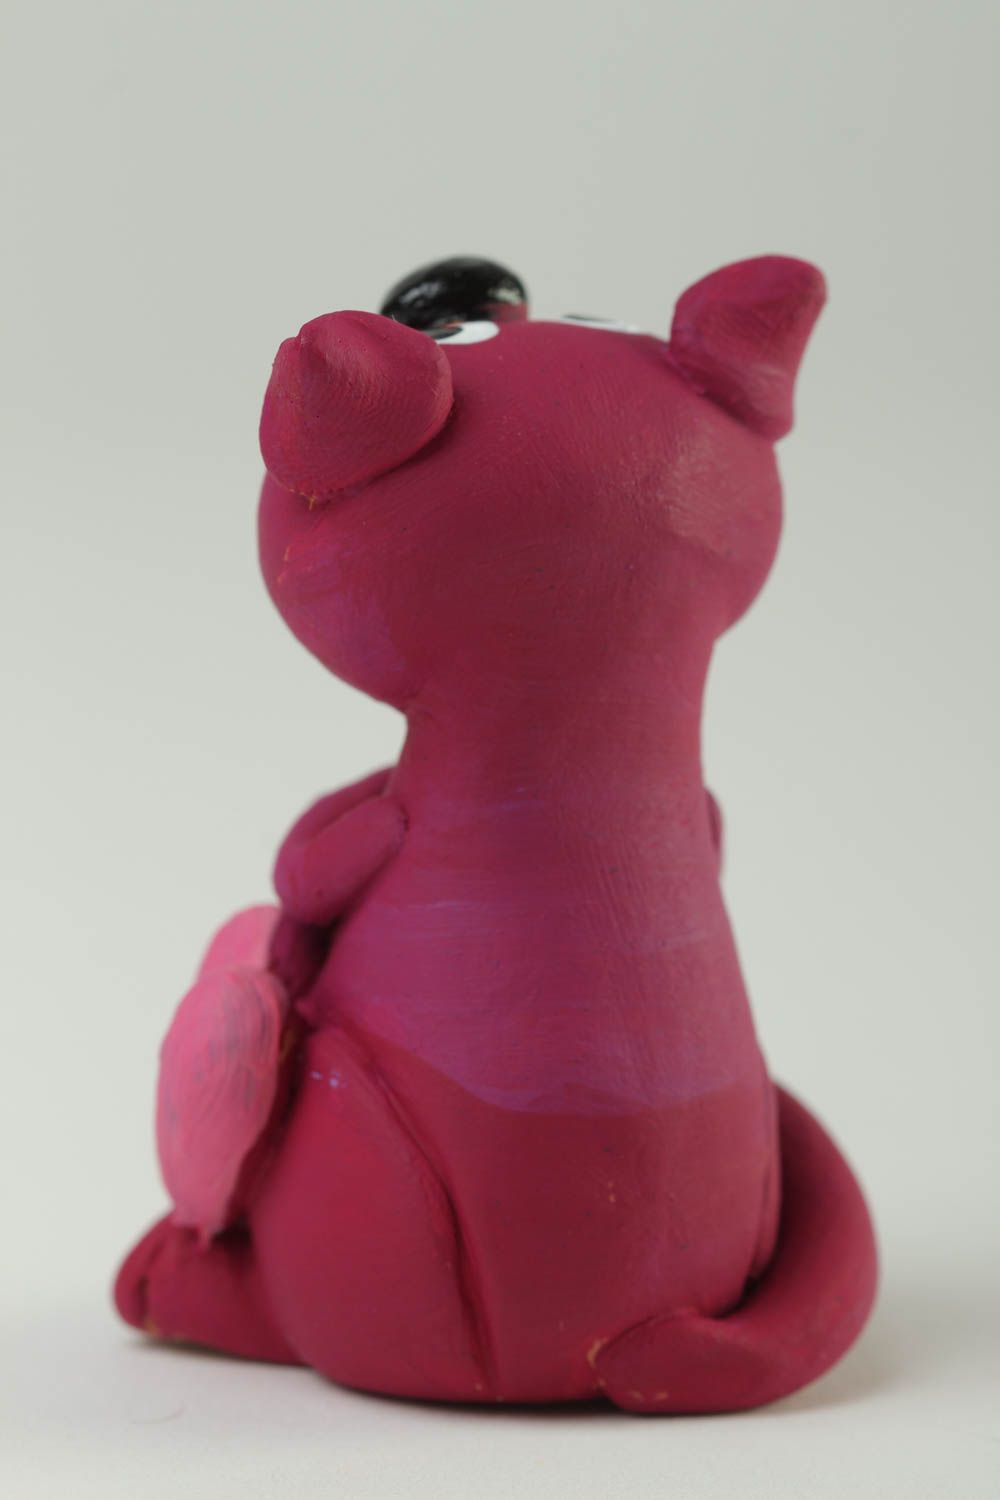 Статуэтка ручной работы фигурка из глины статуэтка для декора розовая кошечка  фото 4